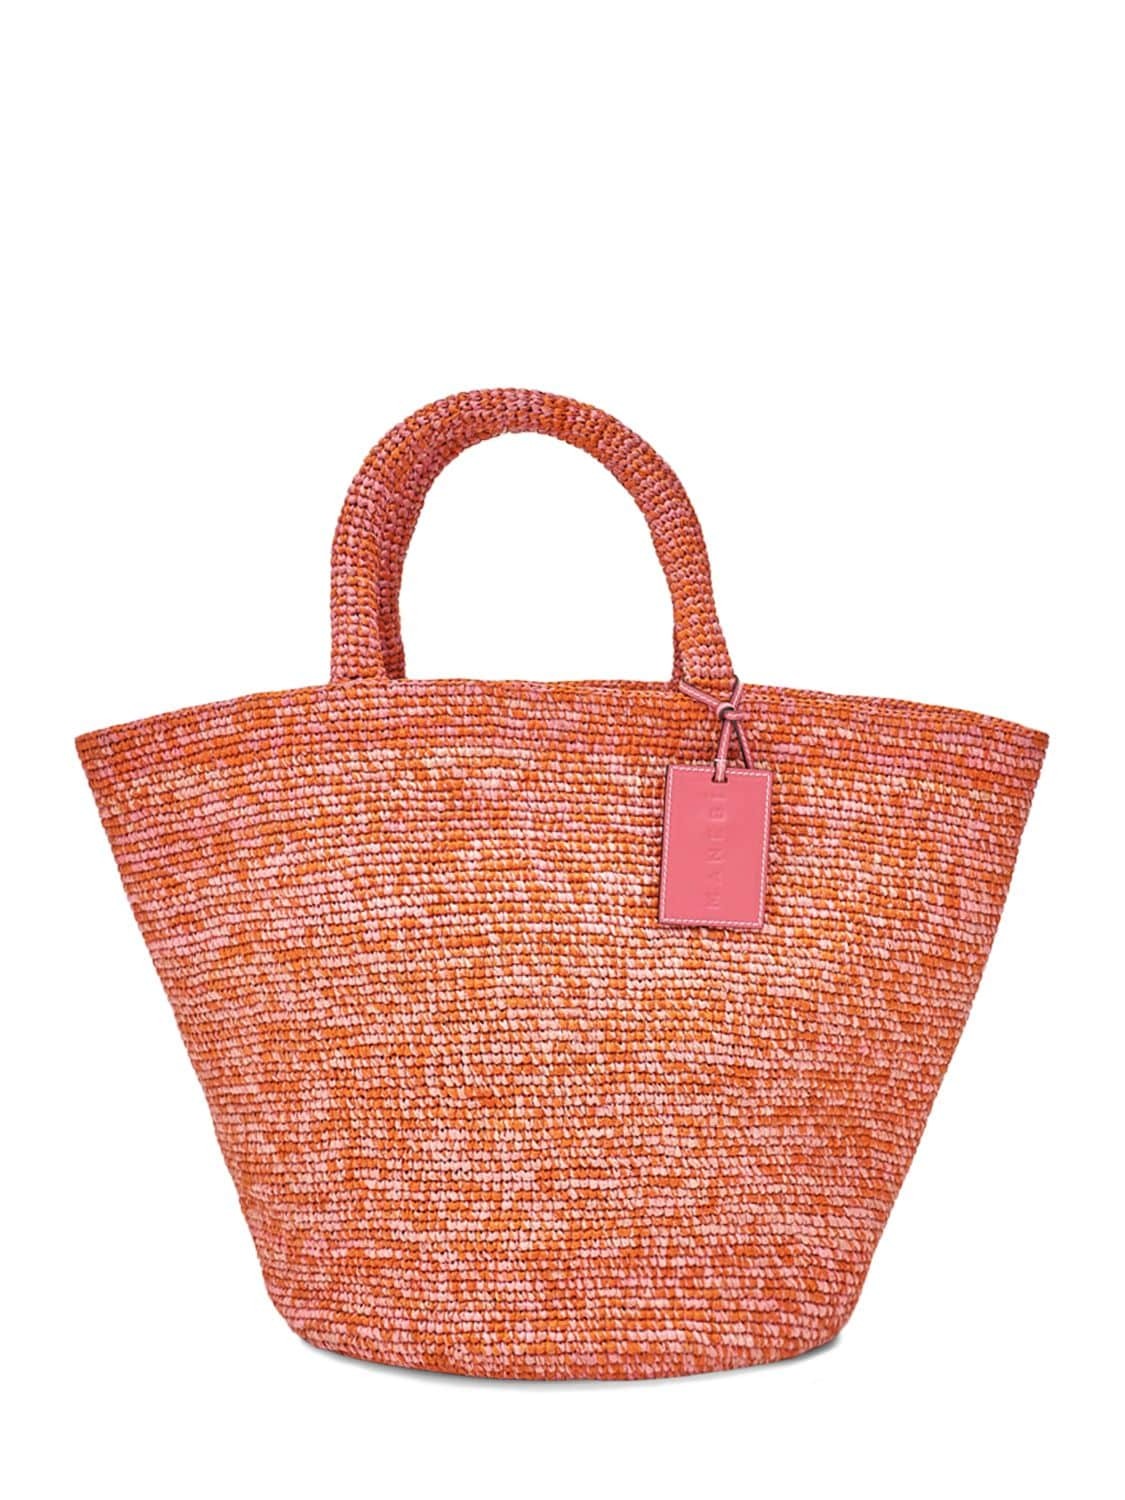 MANEBÌ Summer Tote Bag in orange / pink